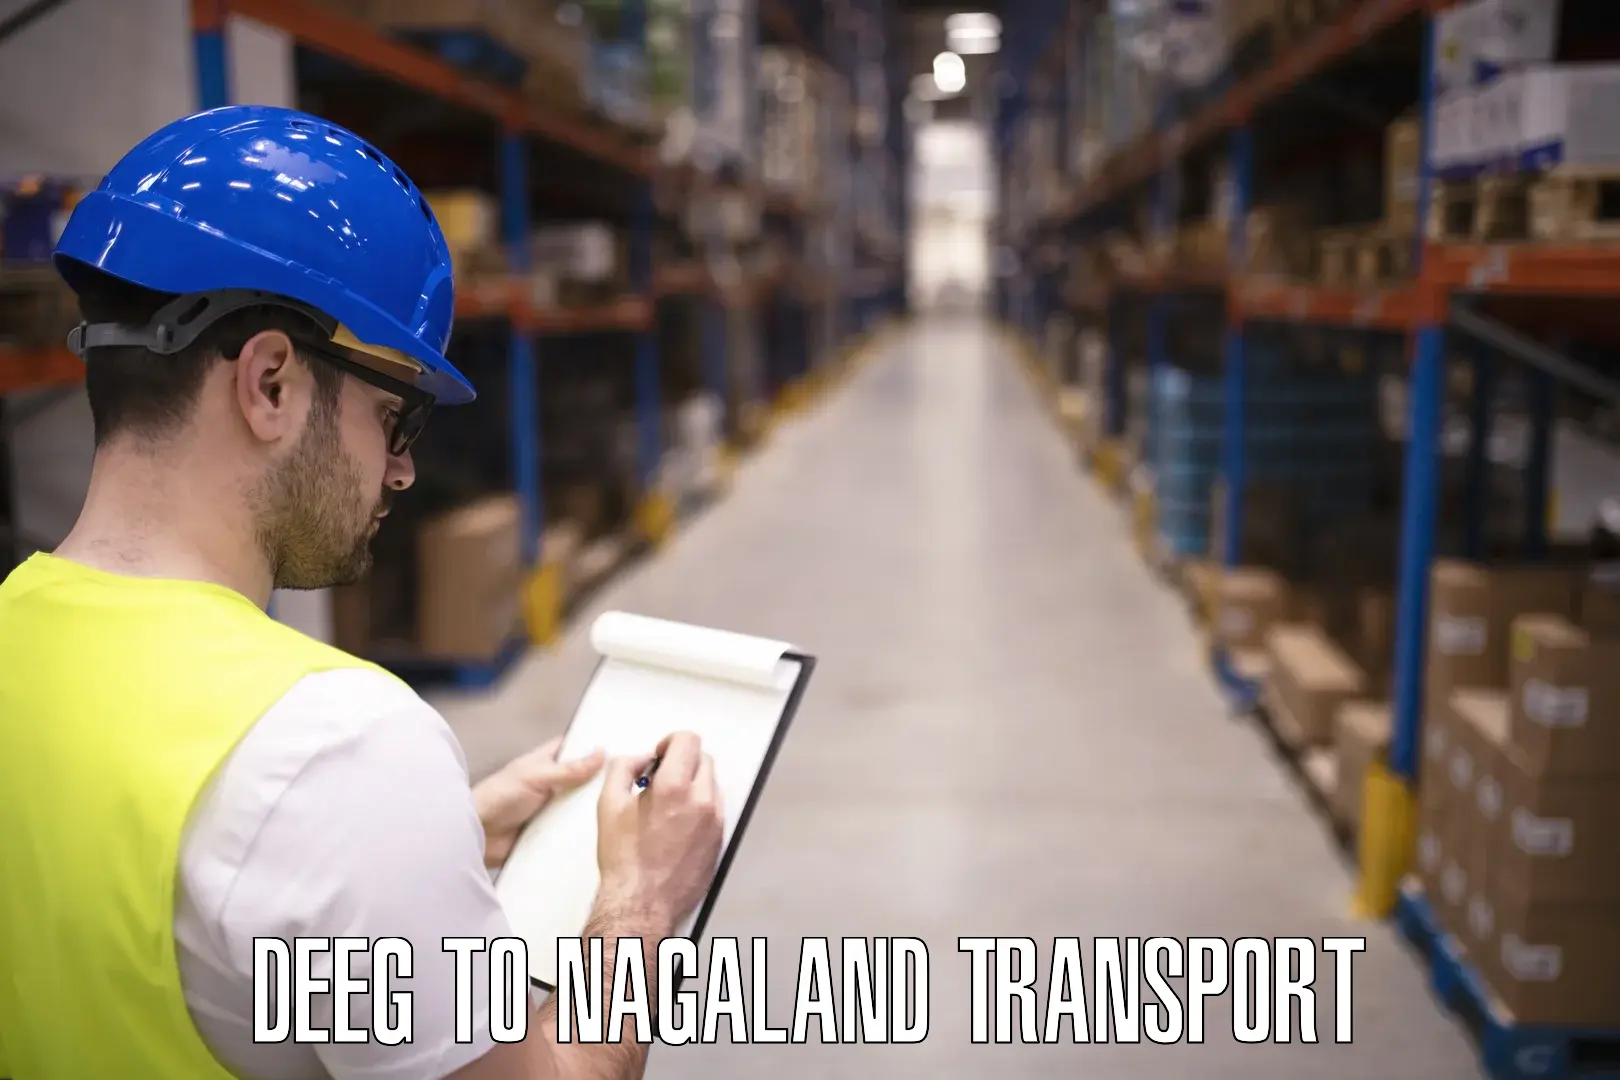 Lorry transport service Deeg to Nagaland